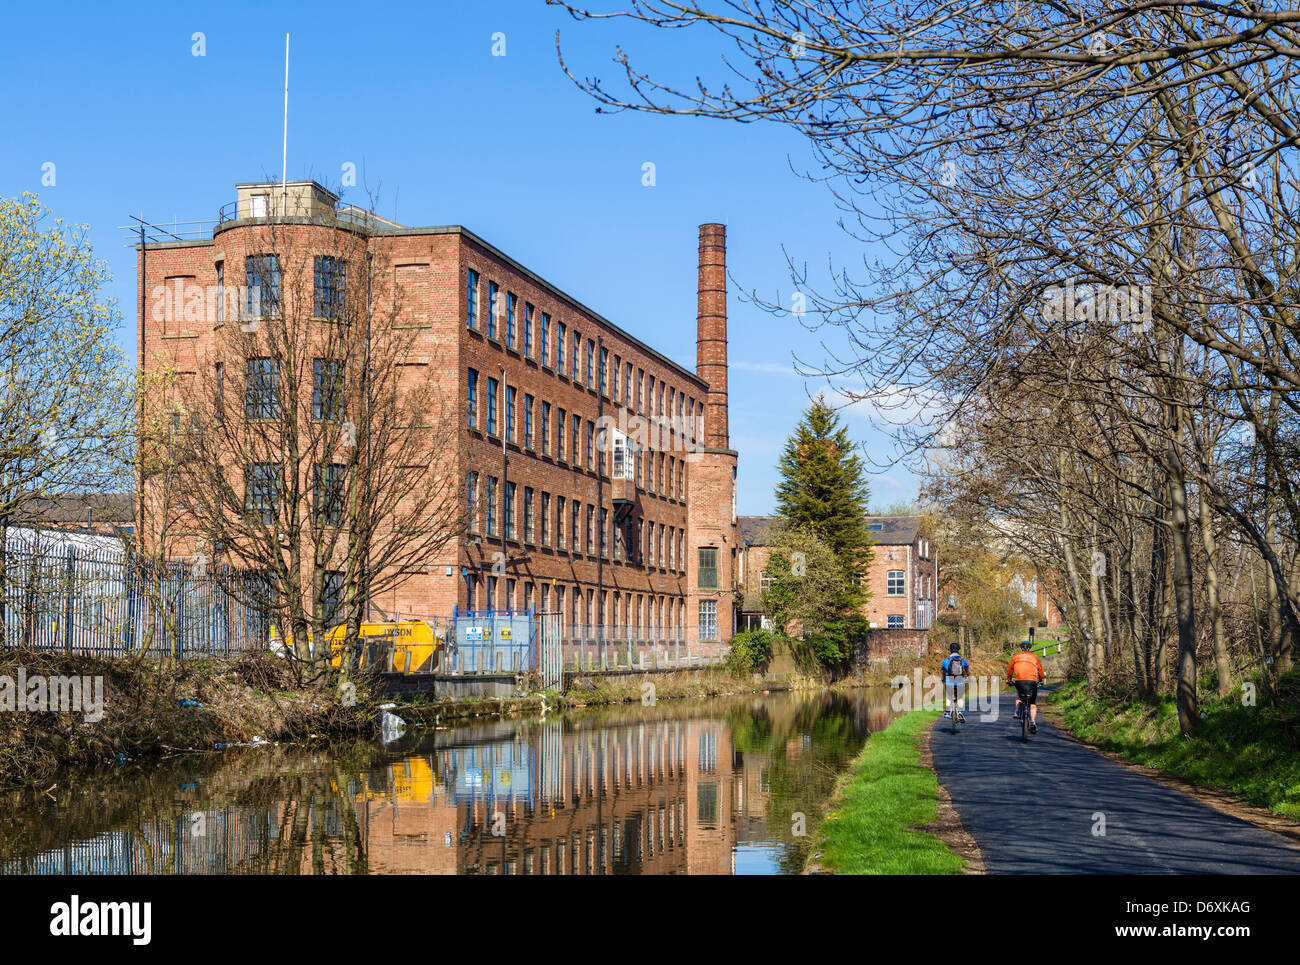 Radfahrer an den Ufern der Leeds, Liverpool Canal am Stadtrand von Leeds in der Nähe von Oddy sperrt, West Yorkshire, Großbritannien Stockfoto